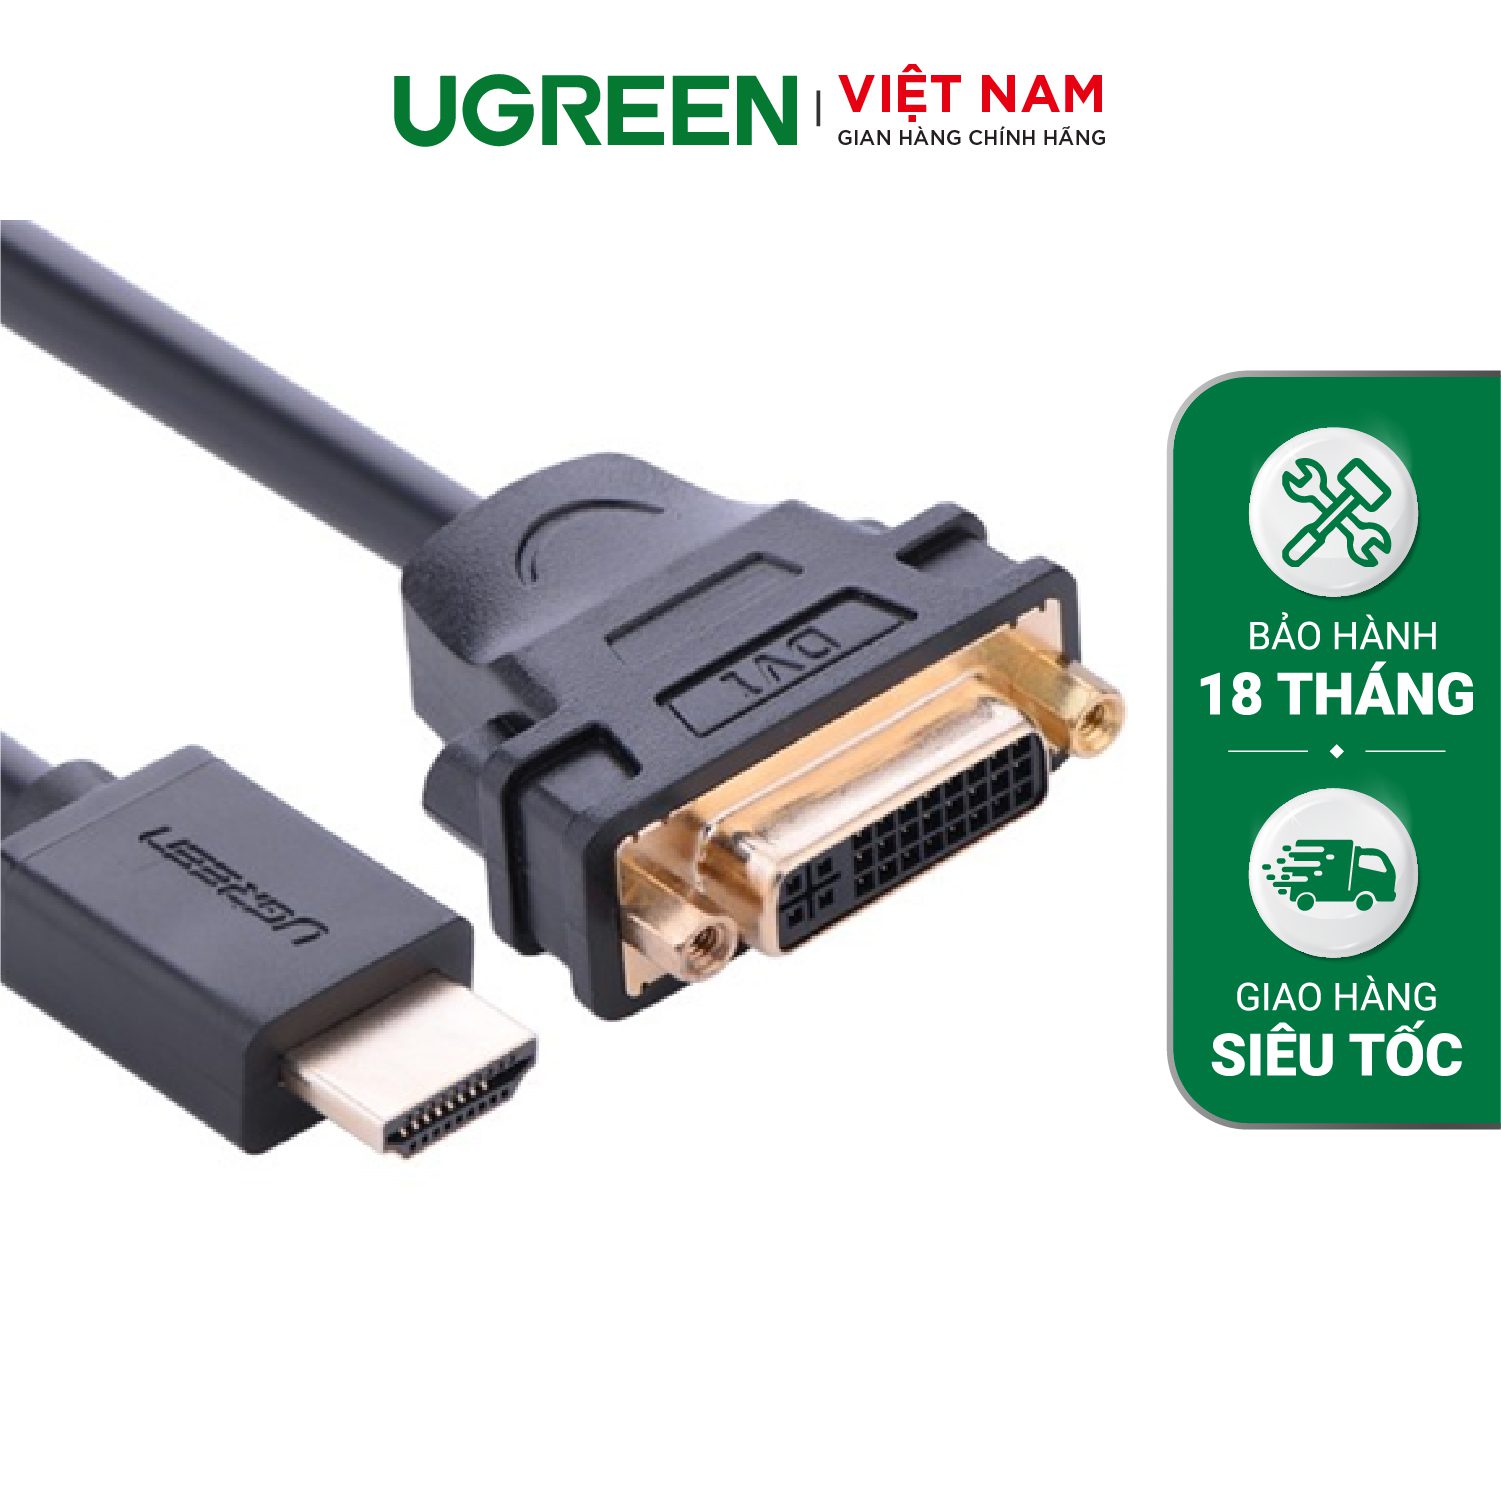 Cáp chuyển đổi HDMI đực sang DVI-I (24+5) cái dài 20Cm UGREEN 20136 (màu đen) – Ugreen Việt Nam